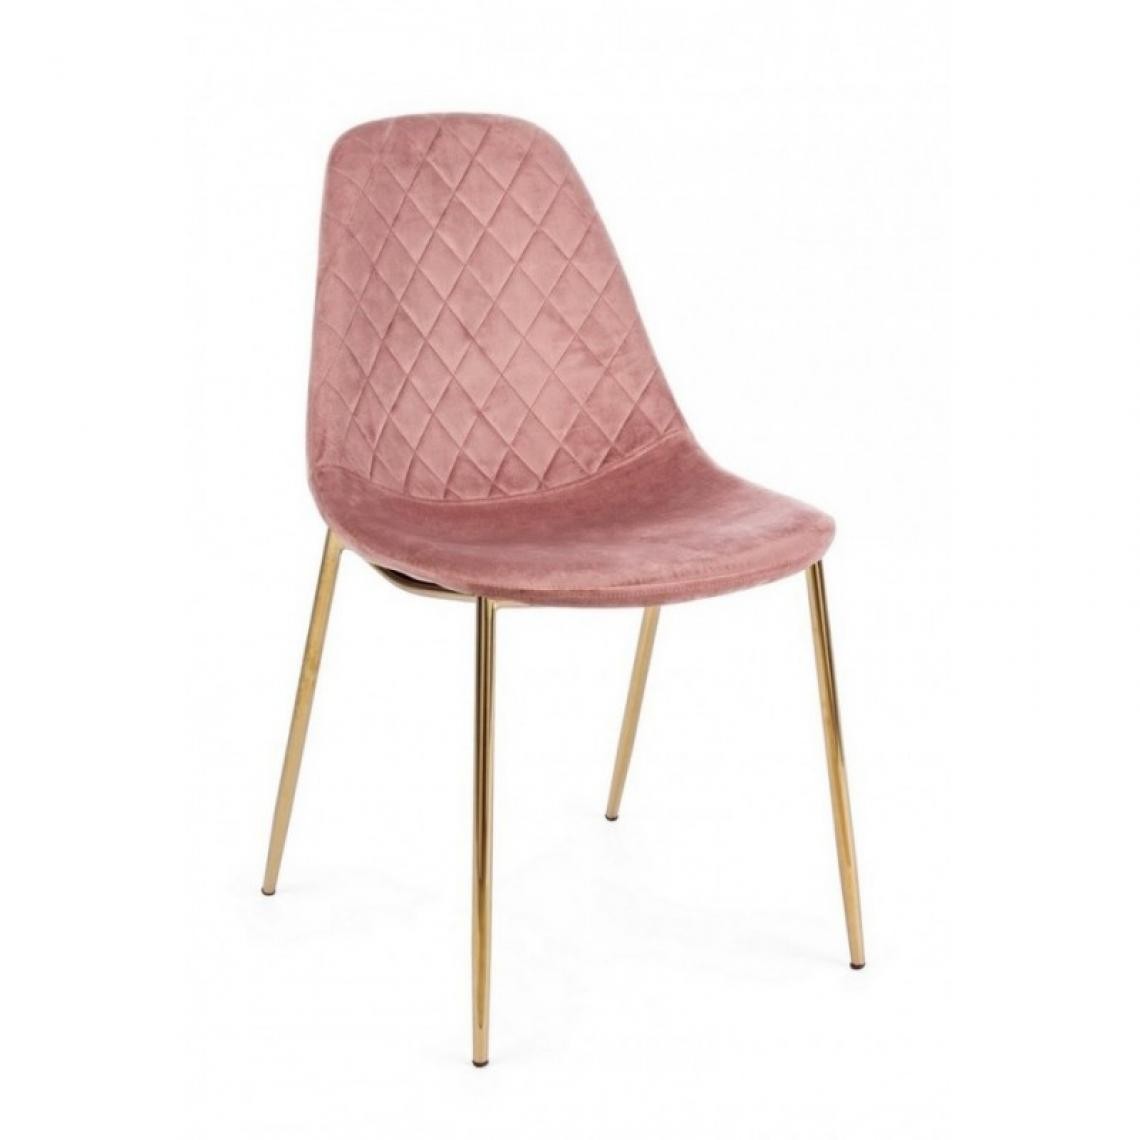 Webmarketpoint - Chaise de salon en velours rose avec pieds dorés - Chaises